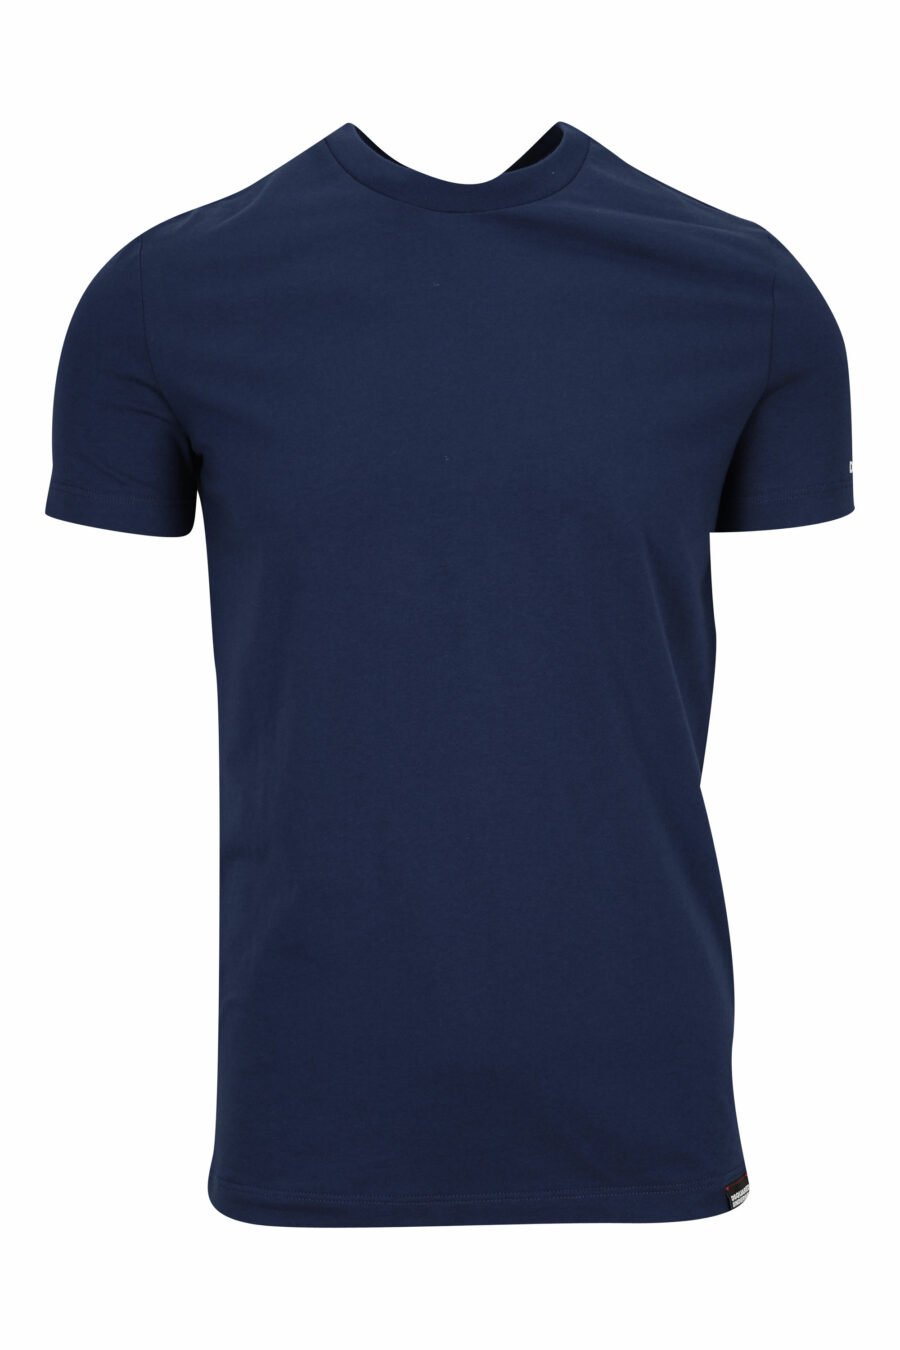 Dark blue T-shirt with white underwear minilogue - 8032674811684